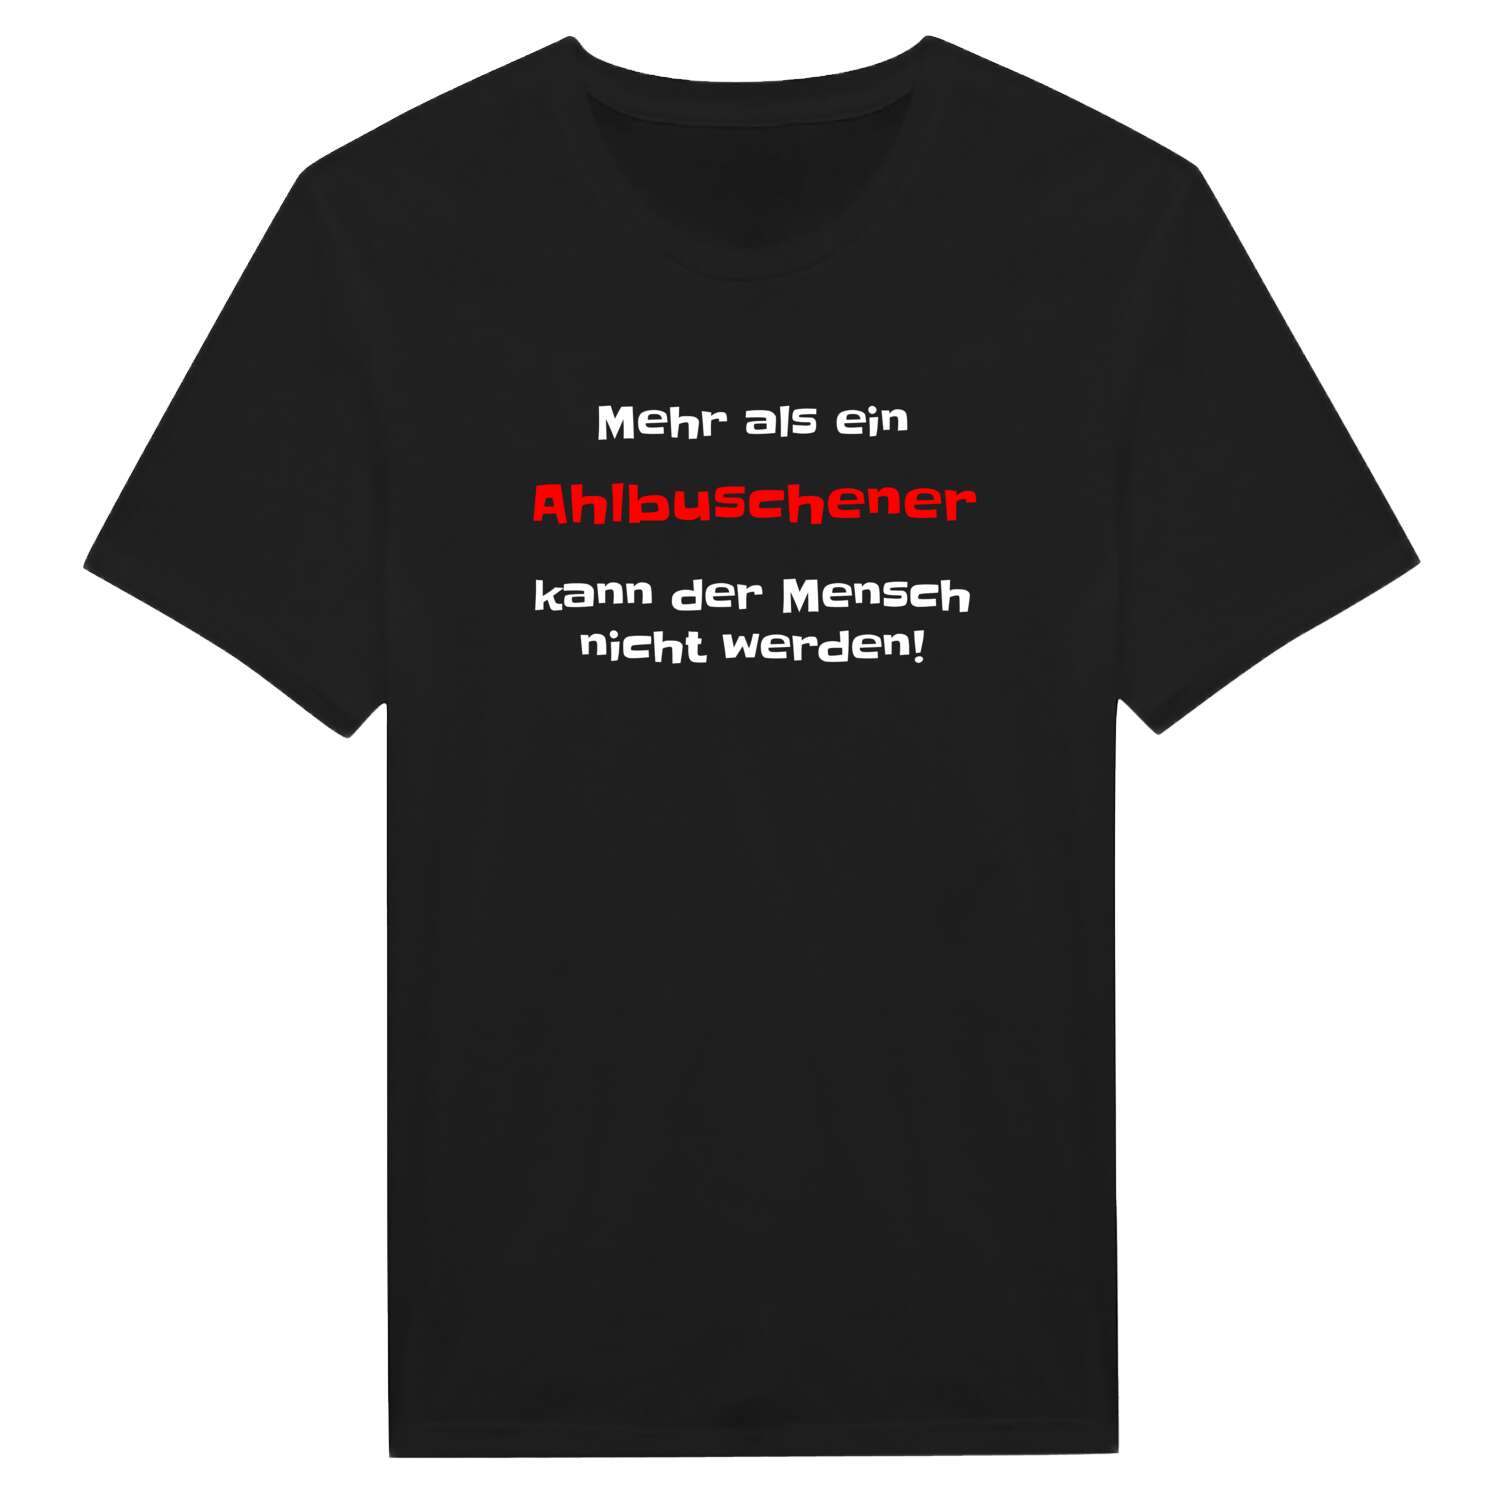 Ahlbusch T-Shirt »Mehr als ein«